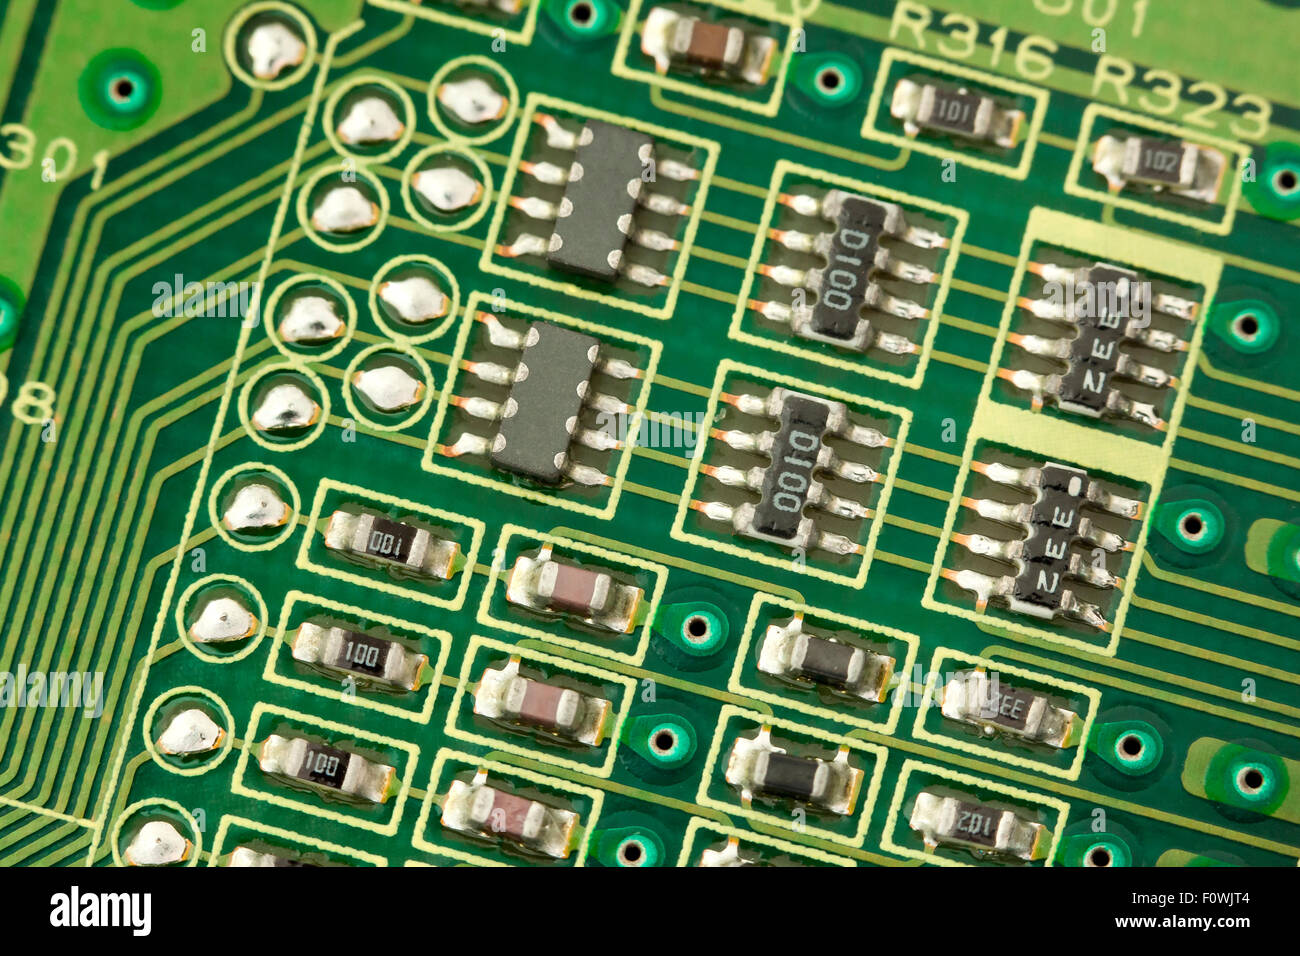 Platine Komponenten closeup, leitfähiger Spuren, Micro IC-Chips, micor  Transistoren und Widerstände Stockfotografie - Alamy